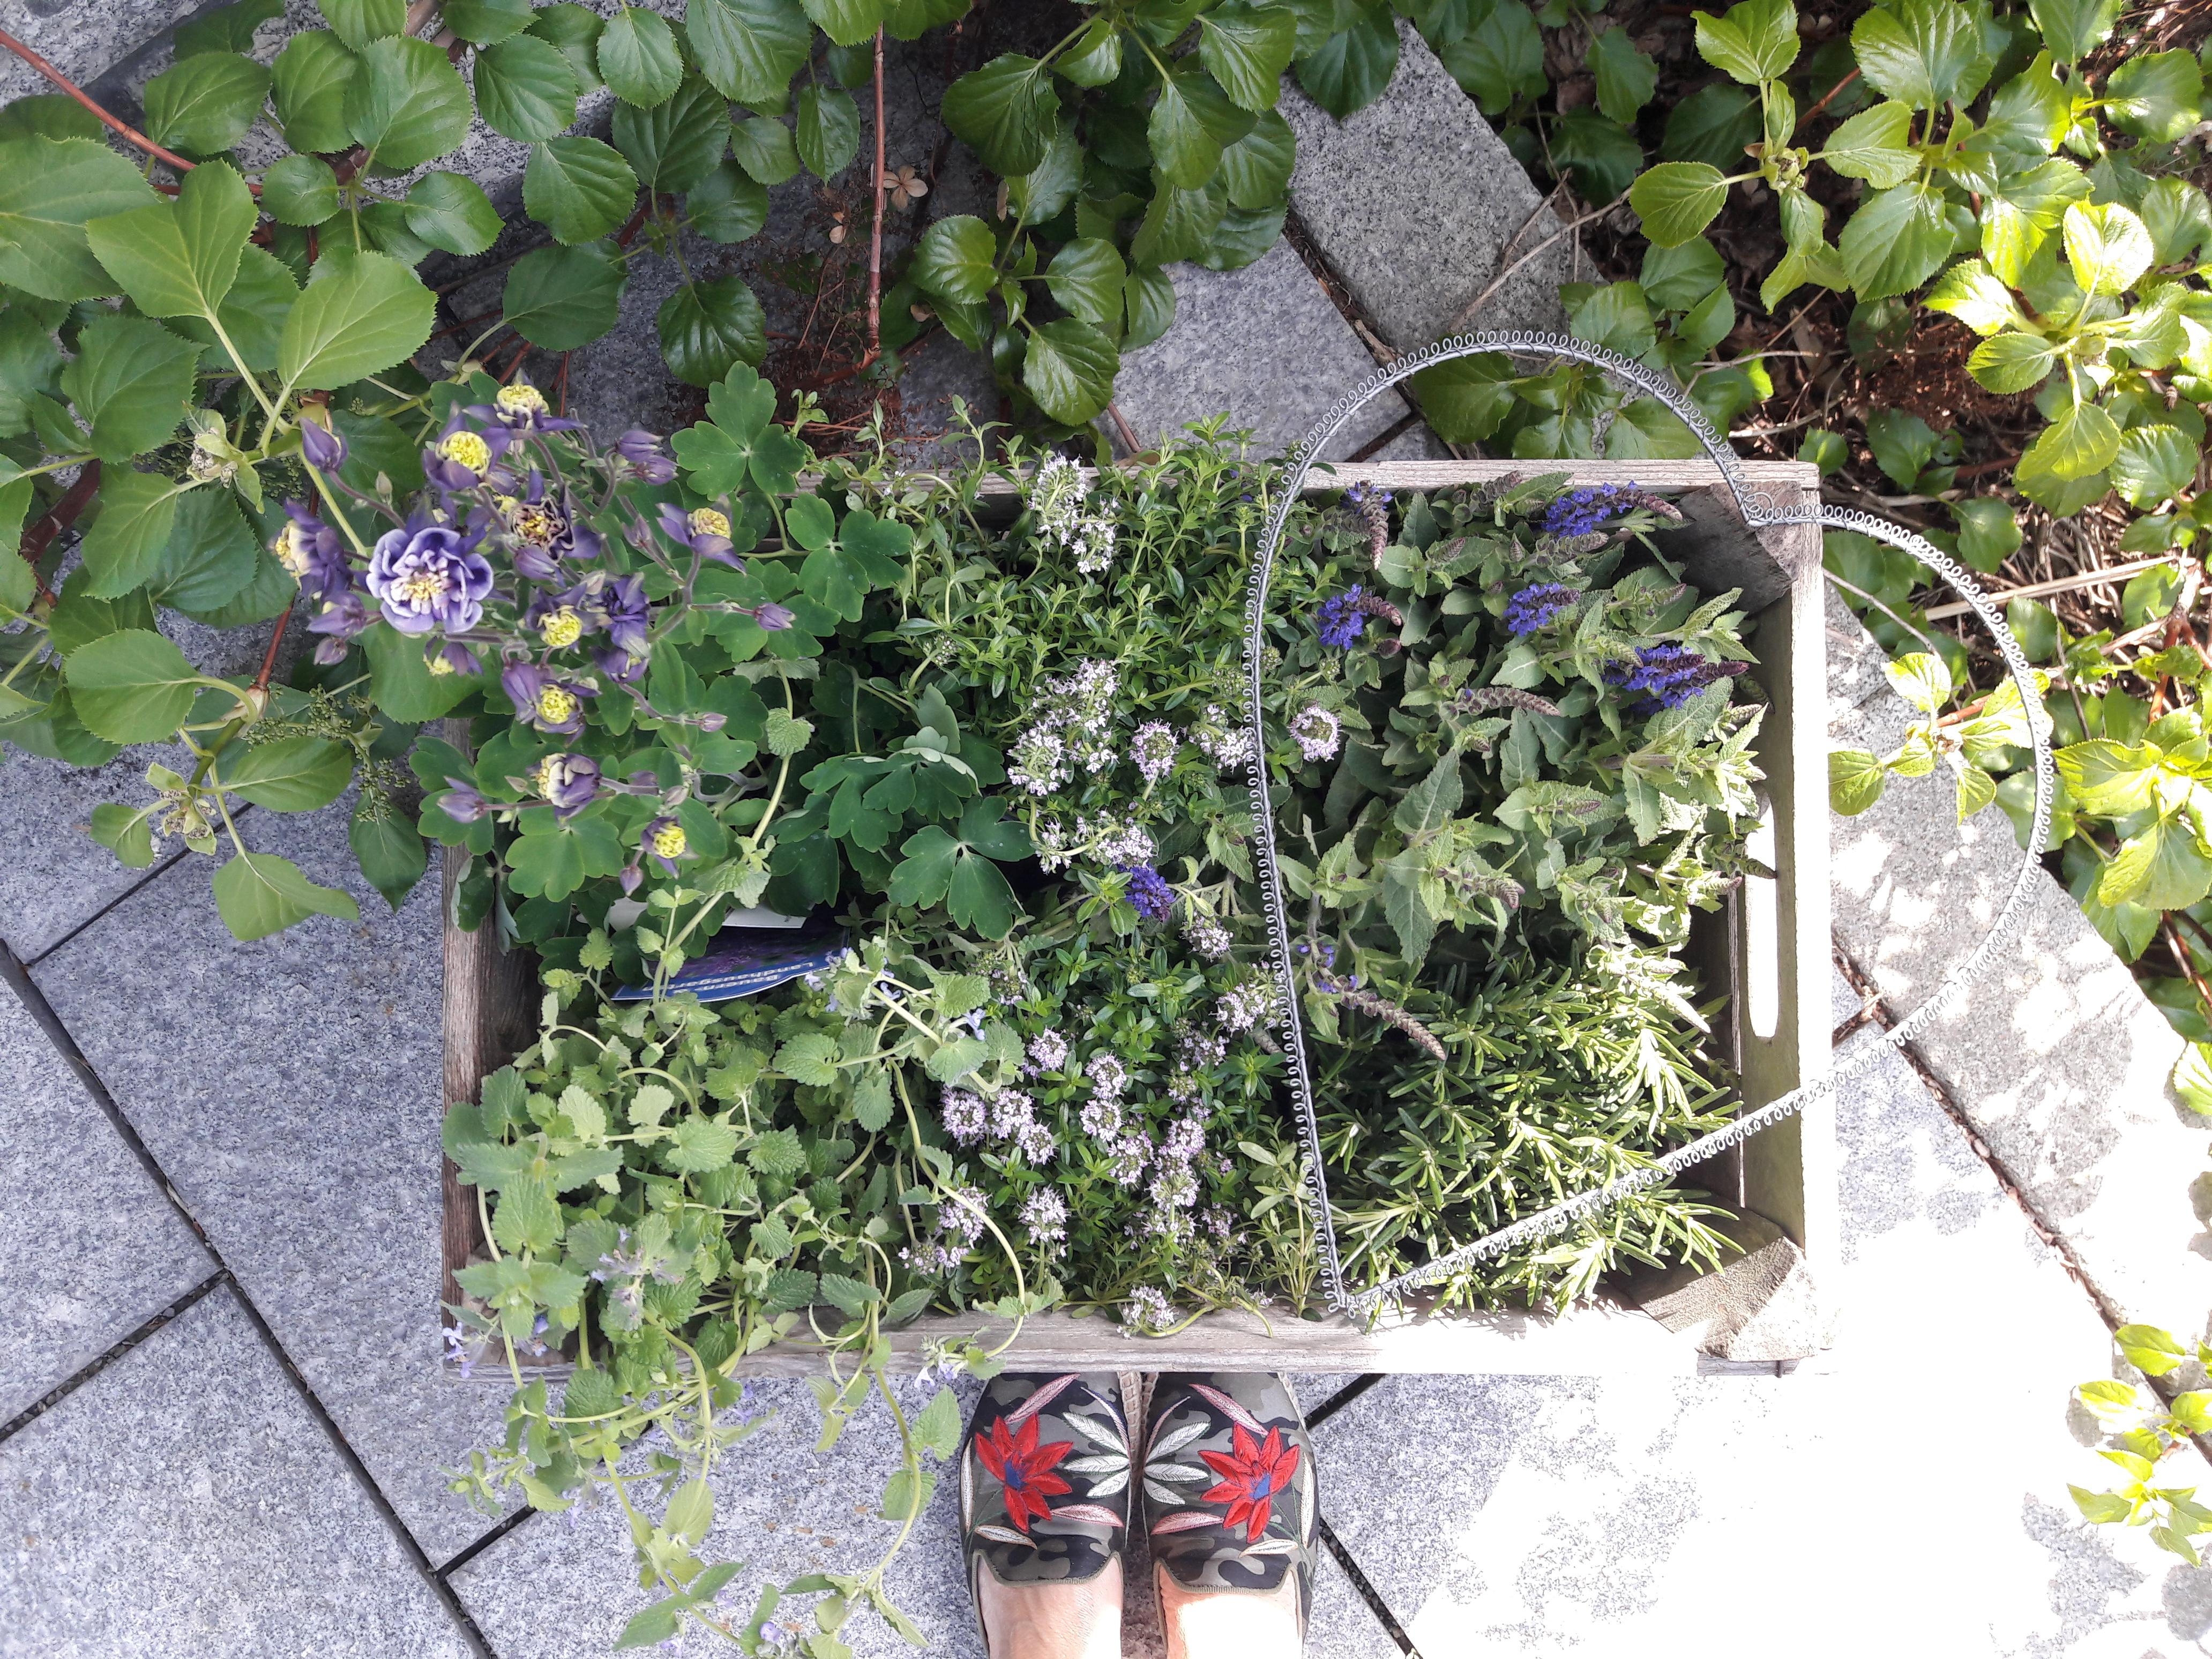 Juhu, Gartenzeit!!!
#garten #pflanzen #outdoor #obstkiste #gardening #herz